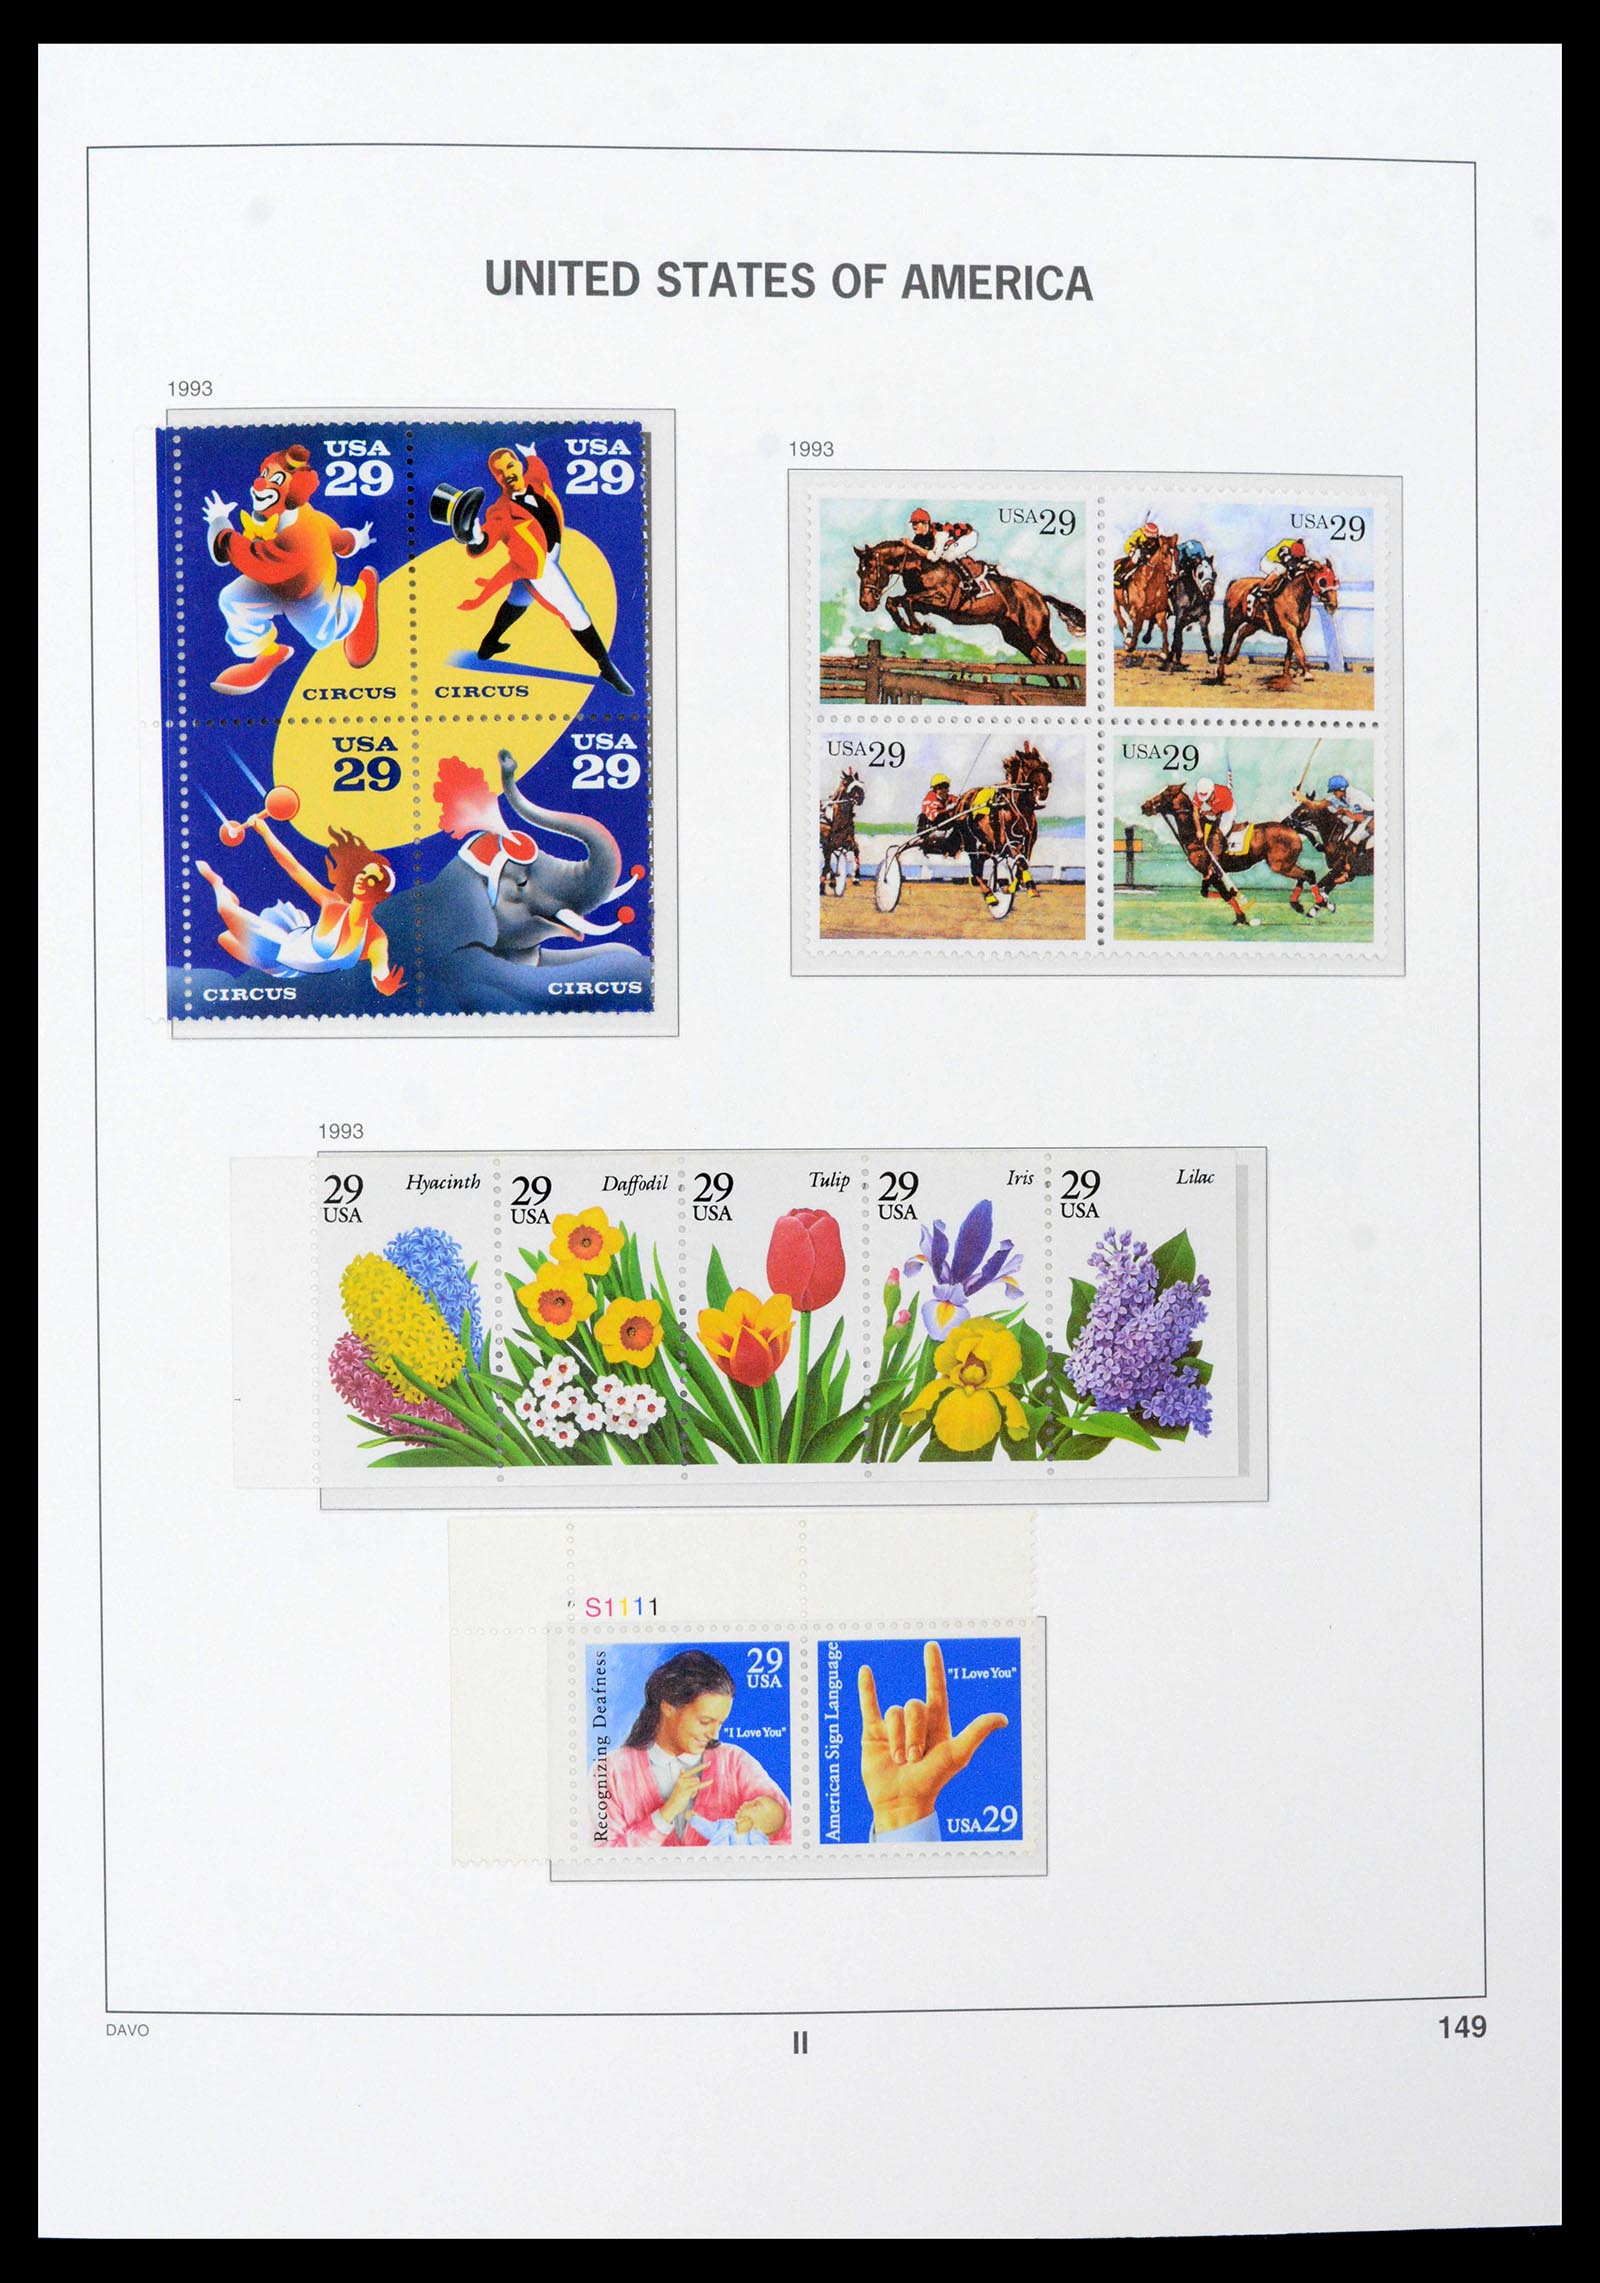 39349 0031 - Stamp collection 39349 USA 1989-2021!